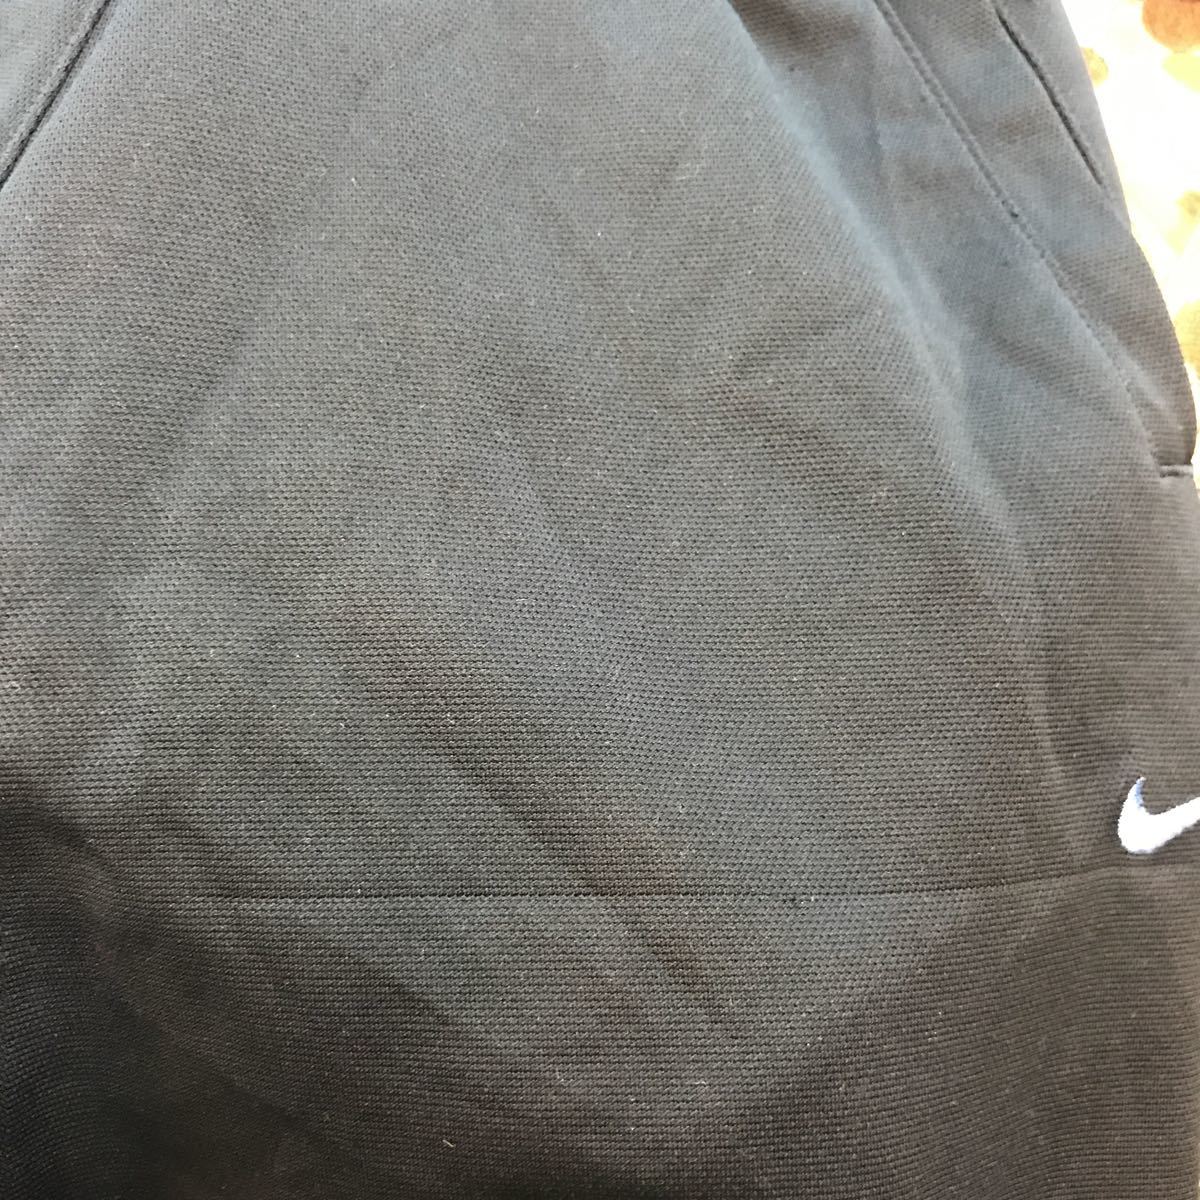  Nike шорты шорты джерси женский M e1